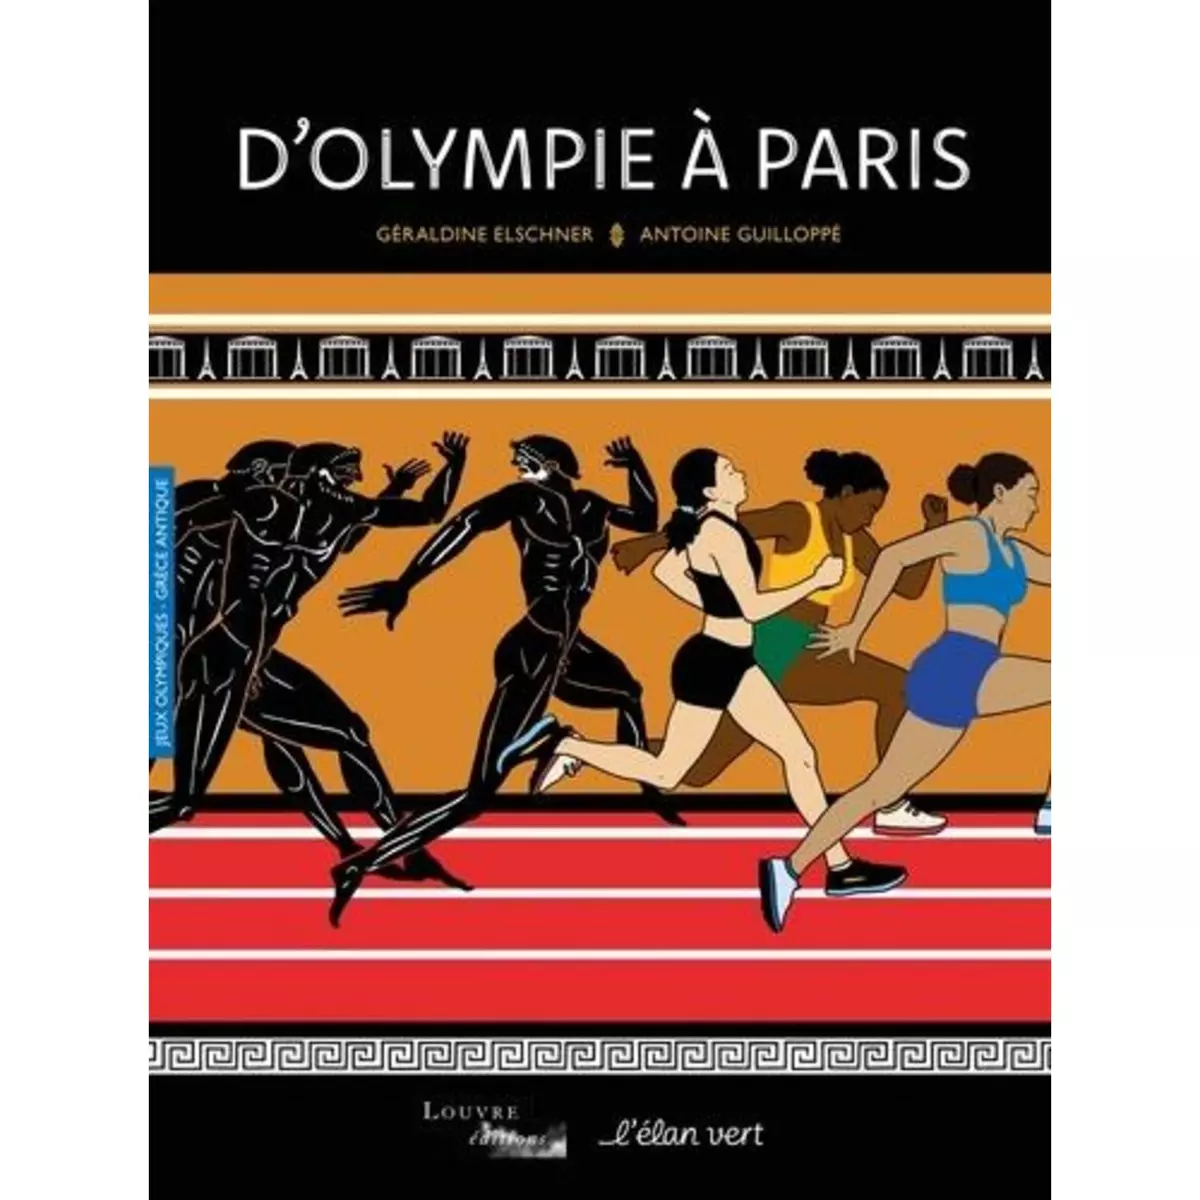  D'OLYMPIE A PARIS, Elschner Géraldine